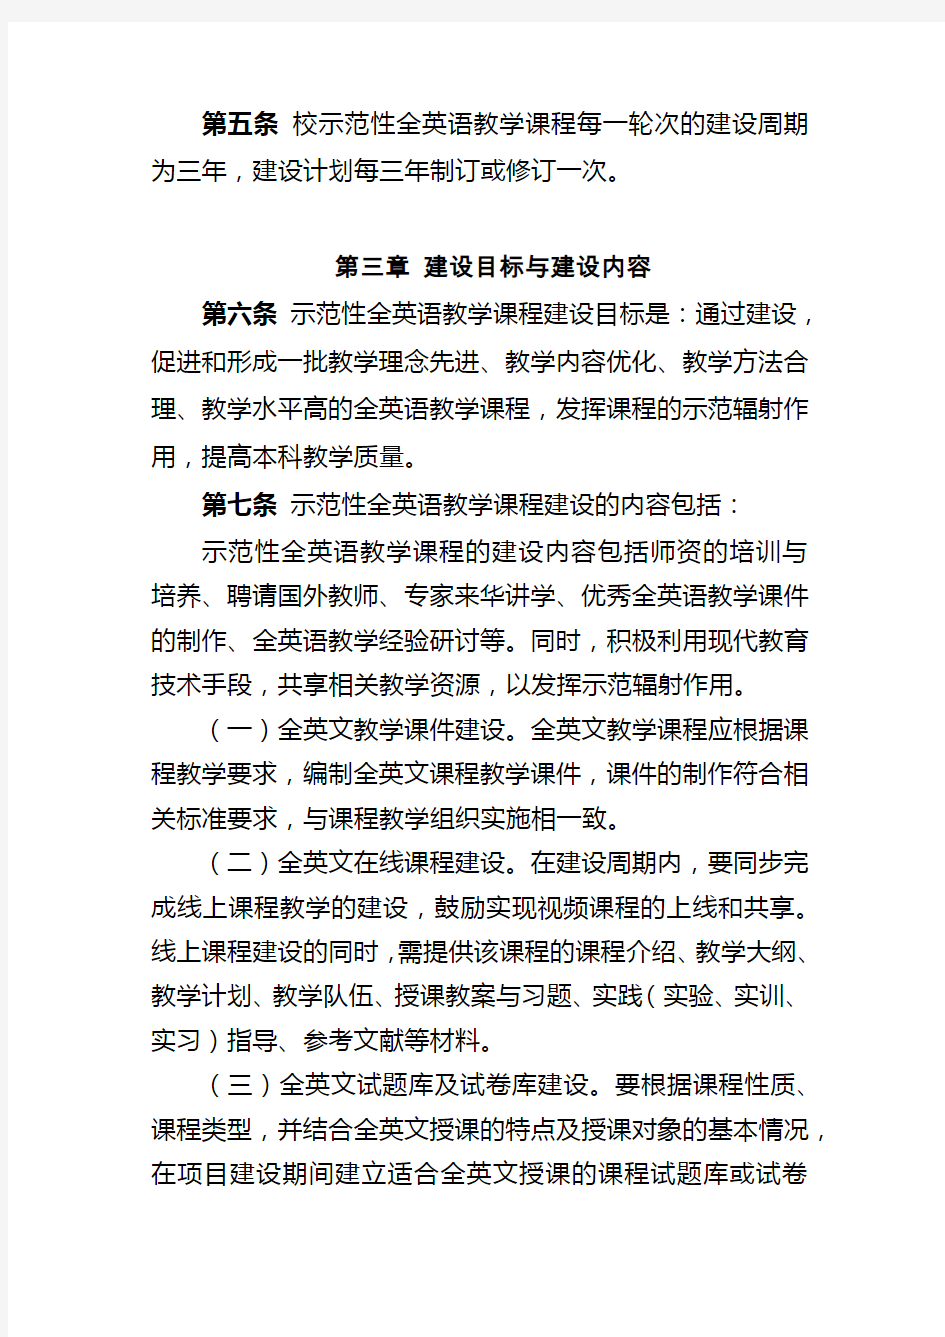 上海海关学院示范性全英语教学课程建设管理办法(试行)